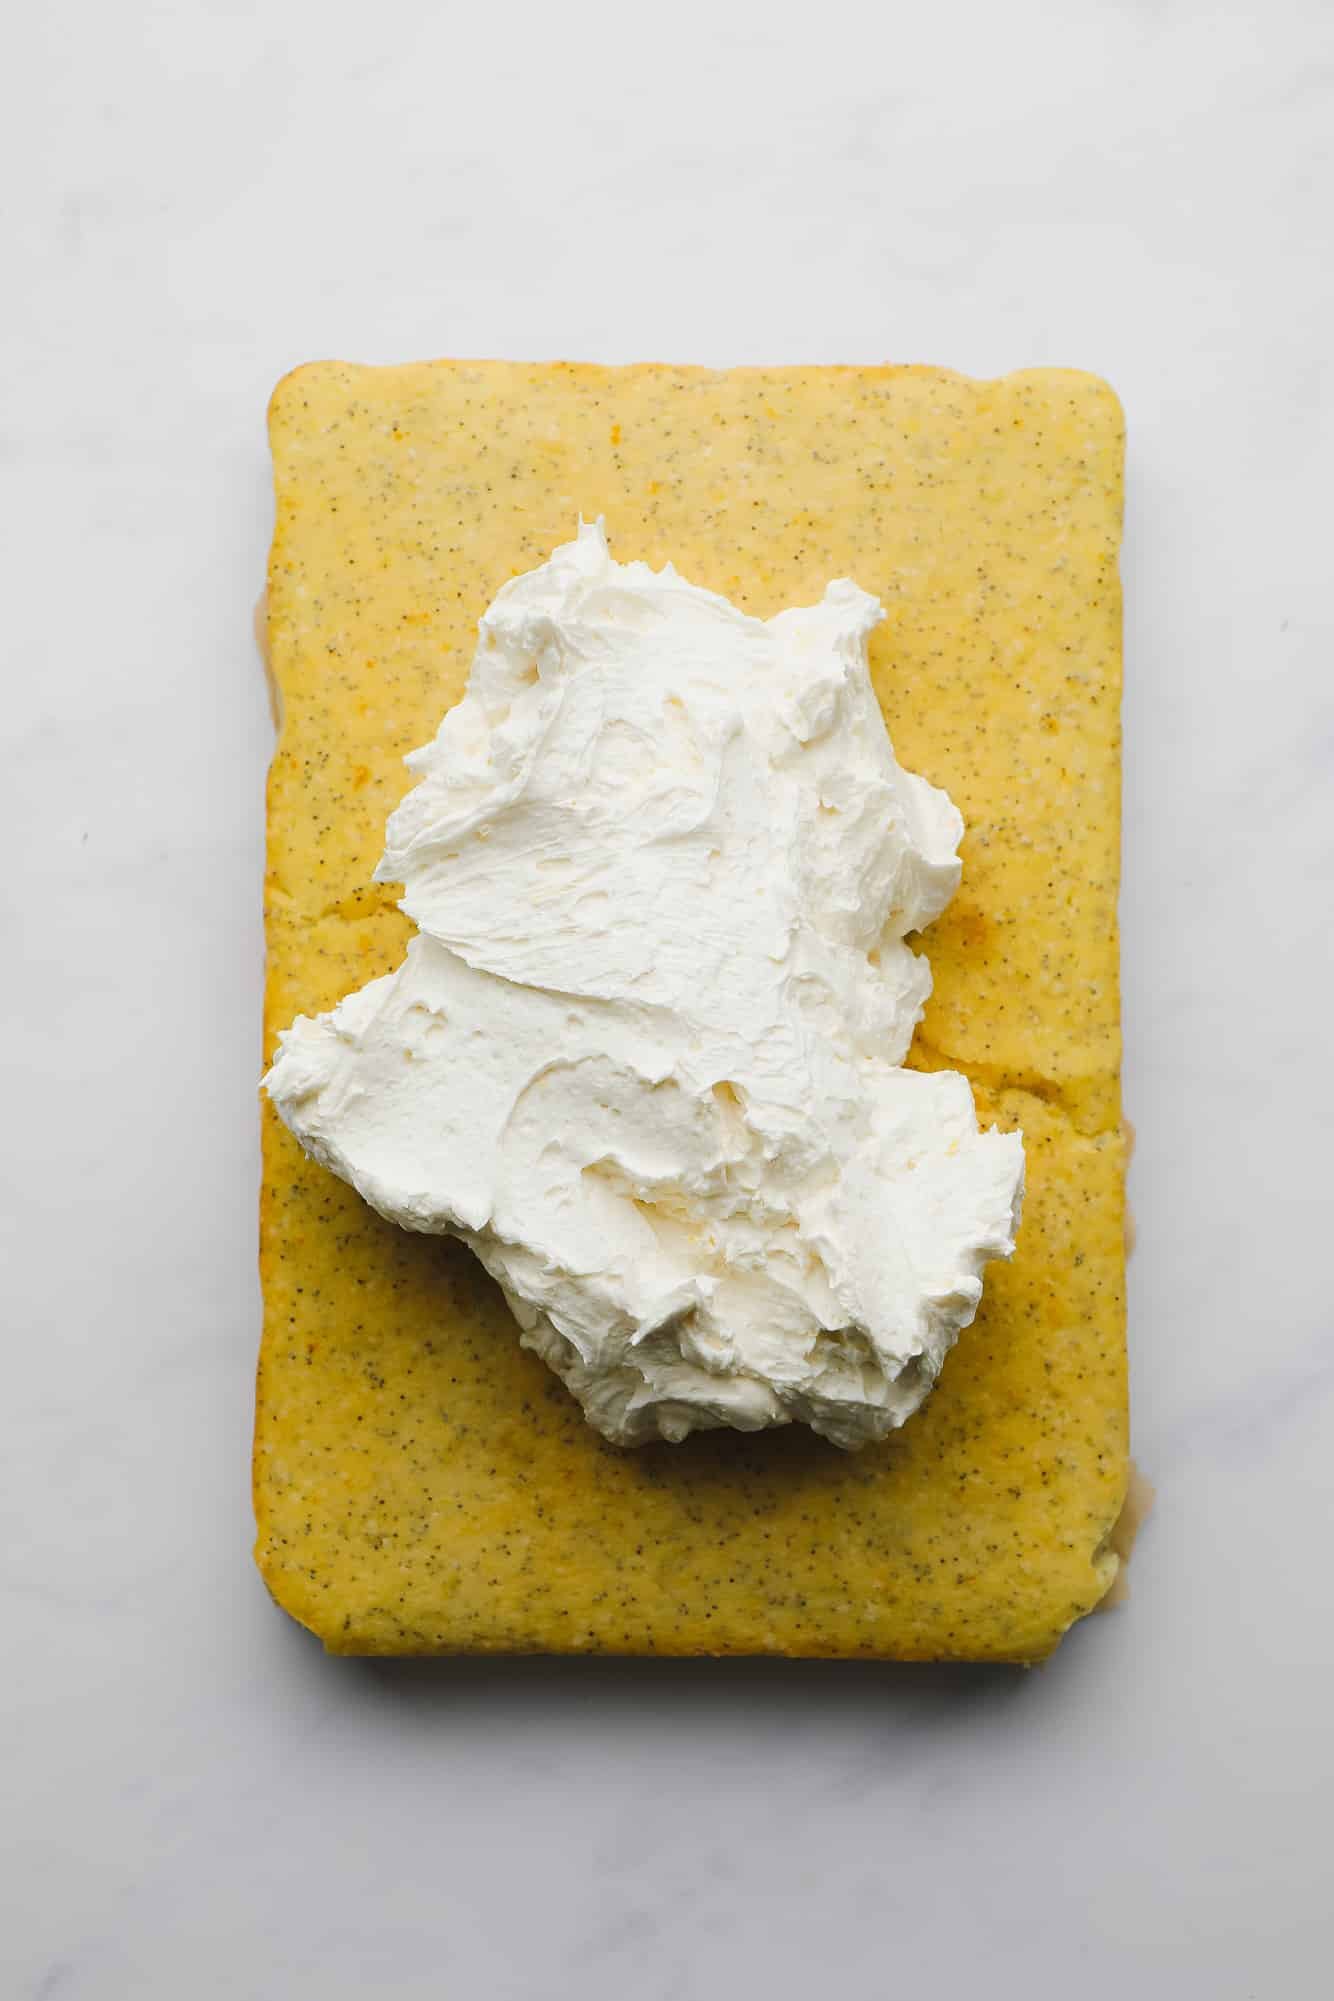 a pile of white buttercream on top of a baked rectangular lemon poppyseed cake.